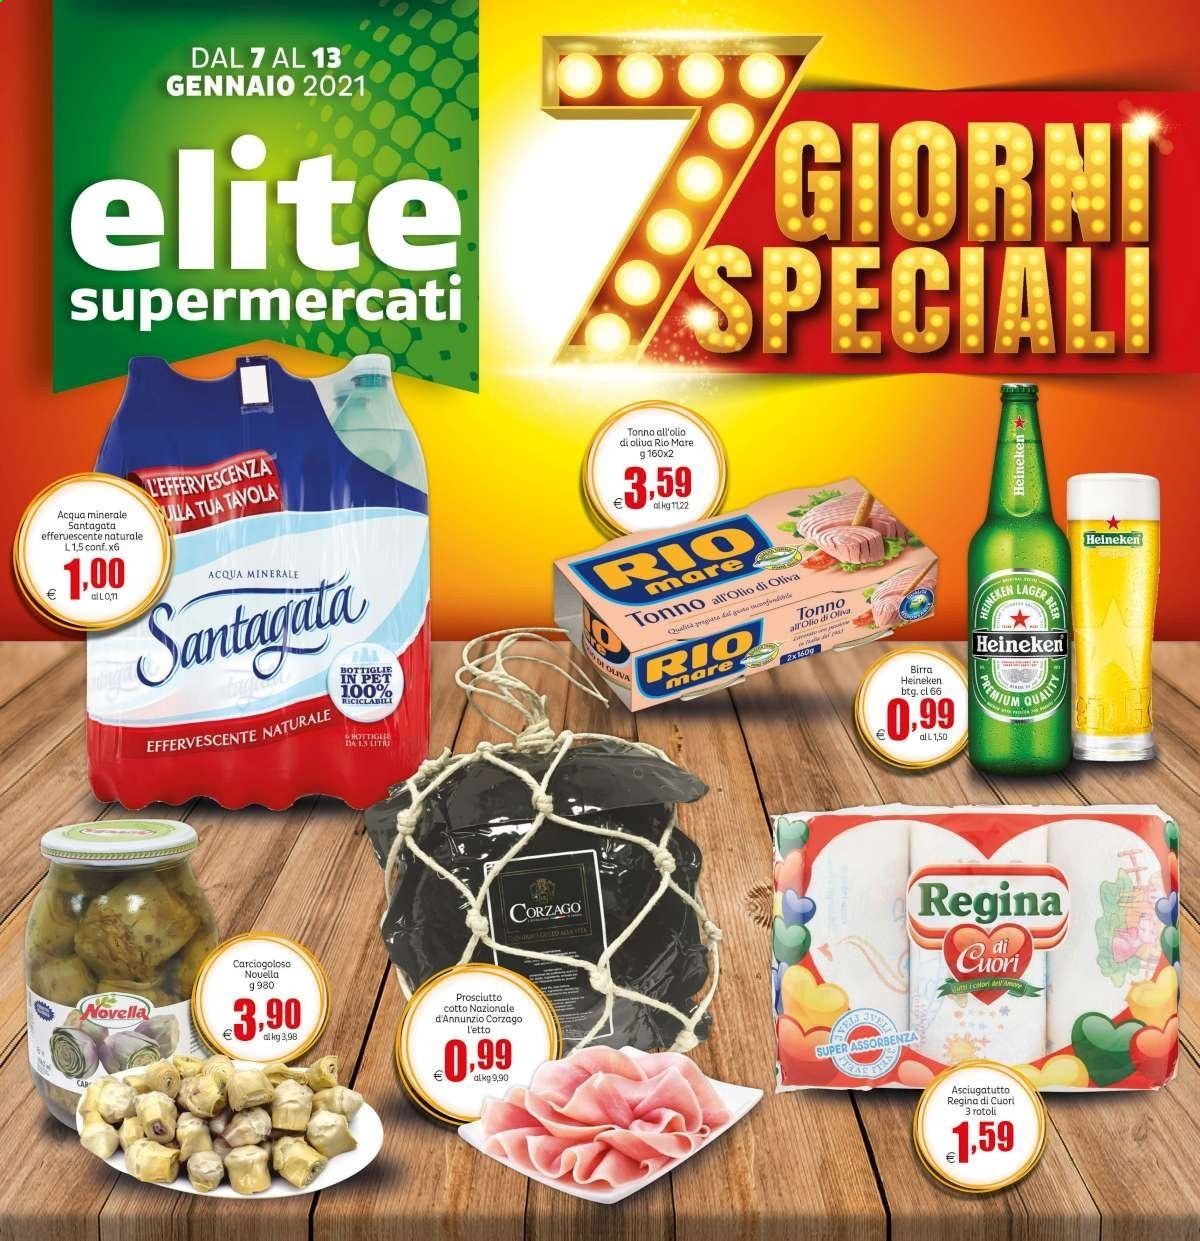 Volantino Elite Supermercati - 7.1.2021 - 13.1.2021.